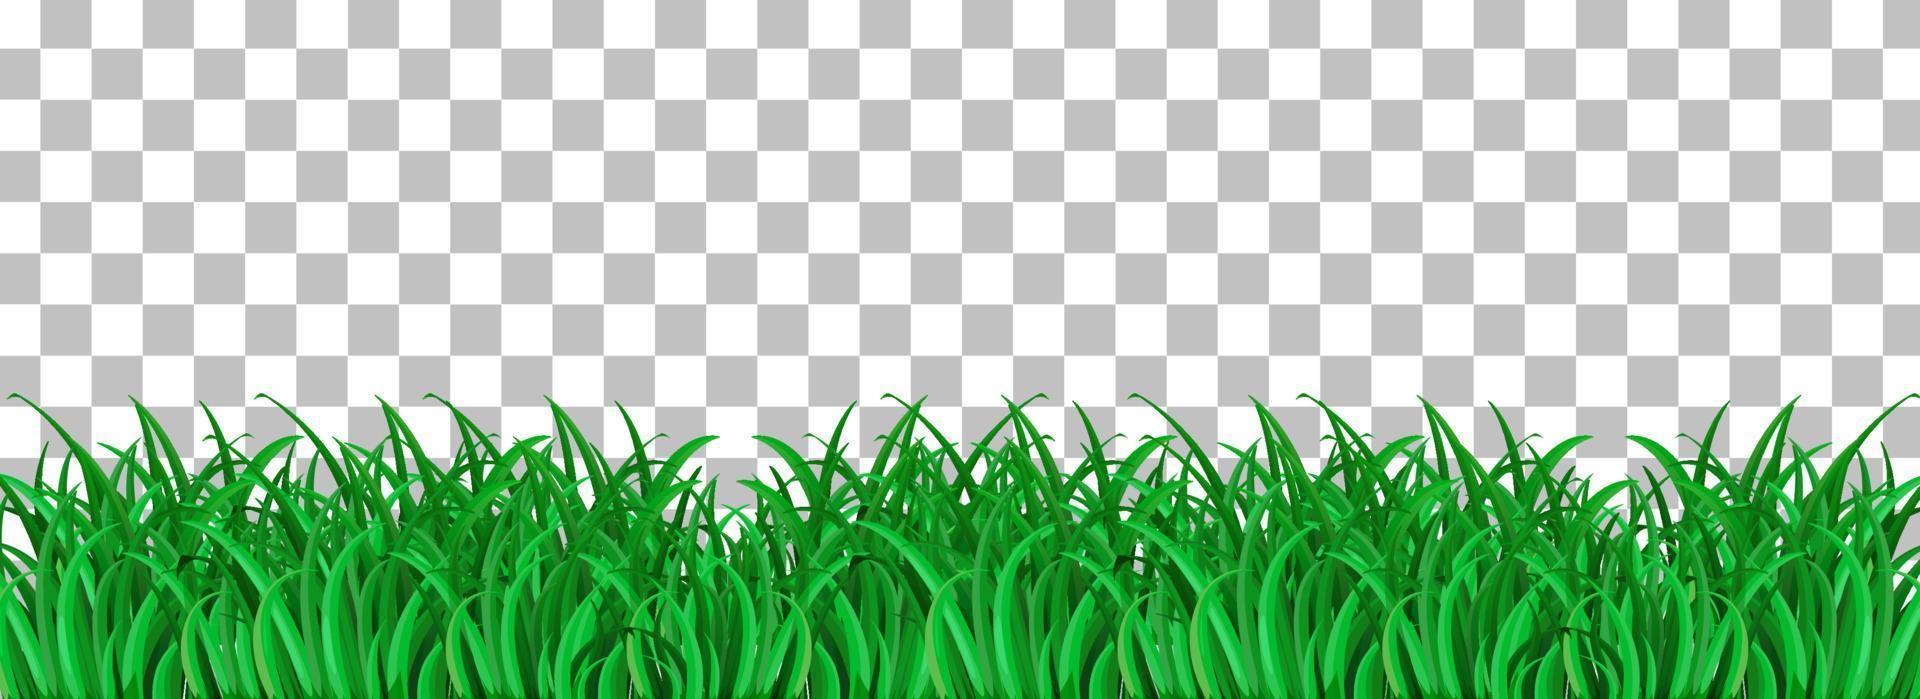 groen gras geïsoleerd vector